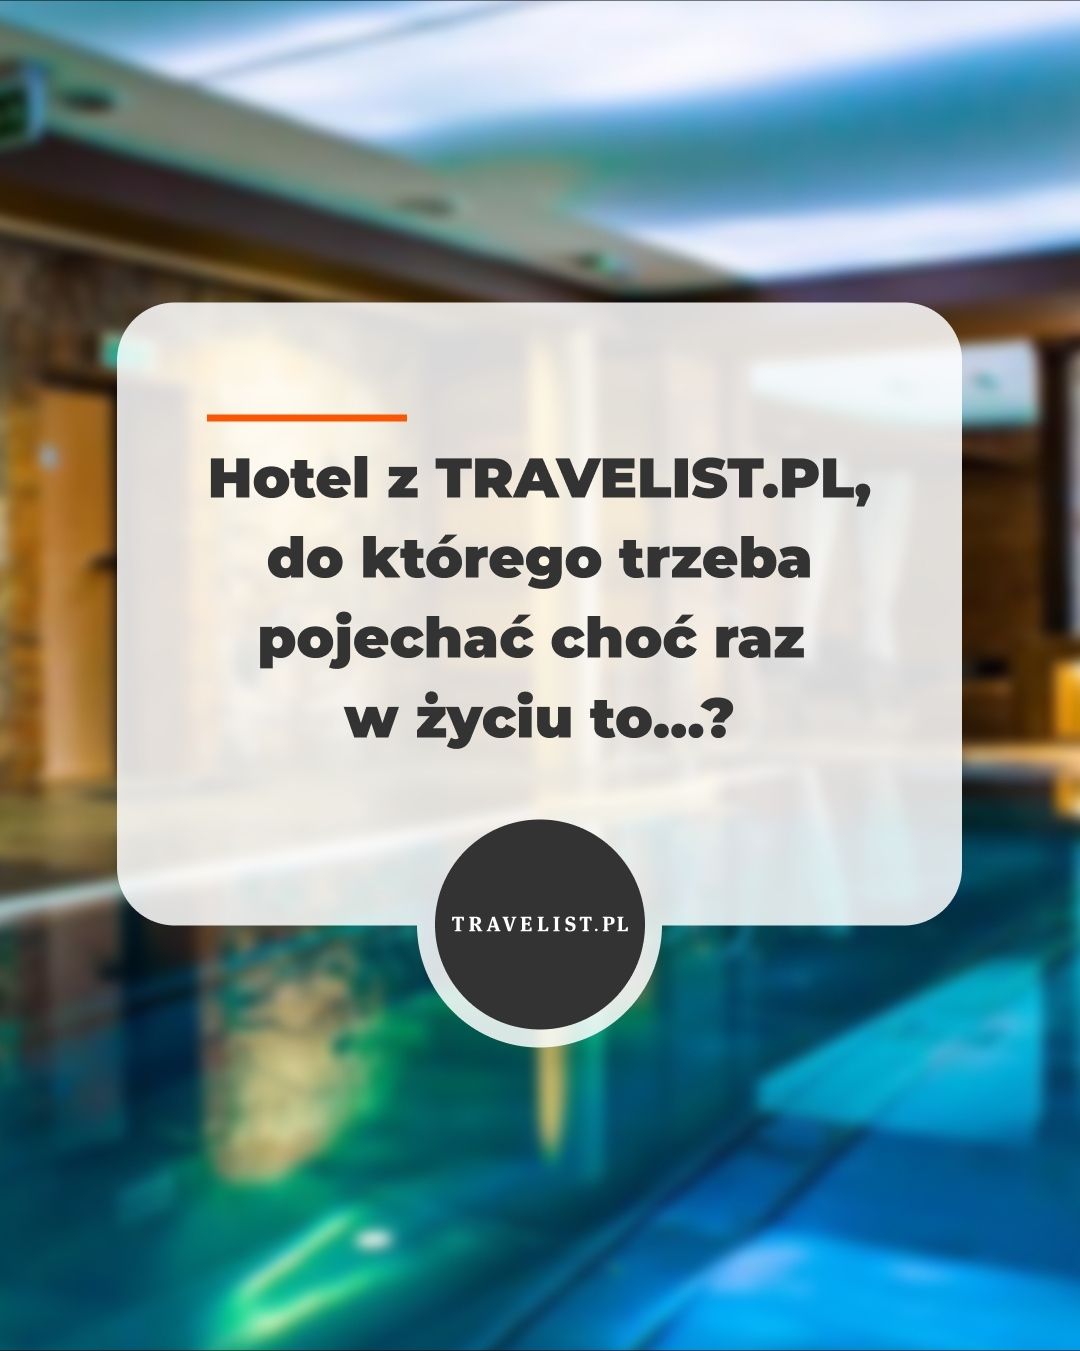 Krótka piłka! Dajcie znać, który hotel wygrywa w Waszym rankingu 🏆⁠
⁠
#hotel #luxuryhotel #TravelistZniżki #gdzienaweekend #MagazynTravelist